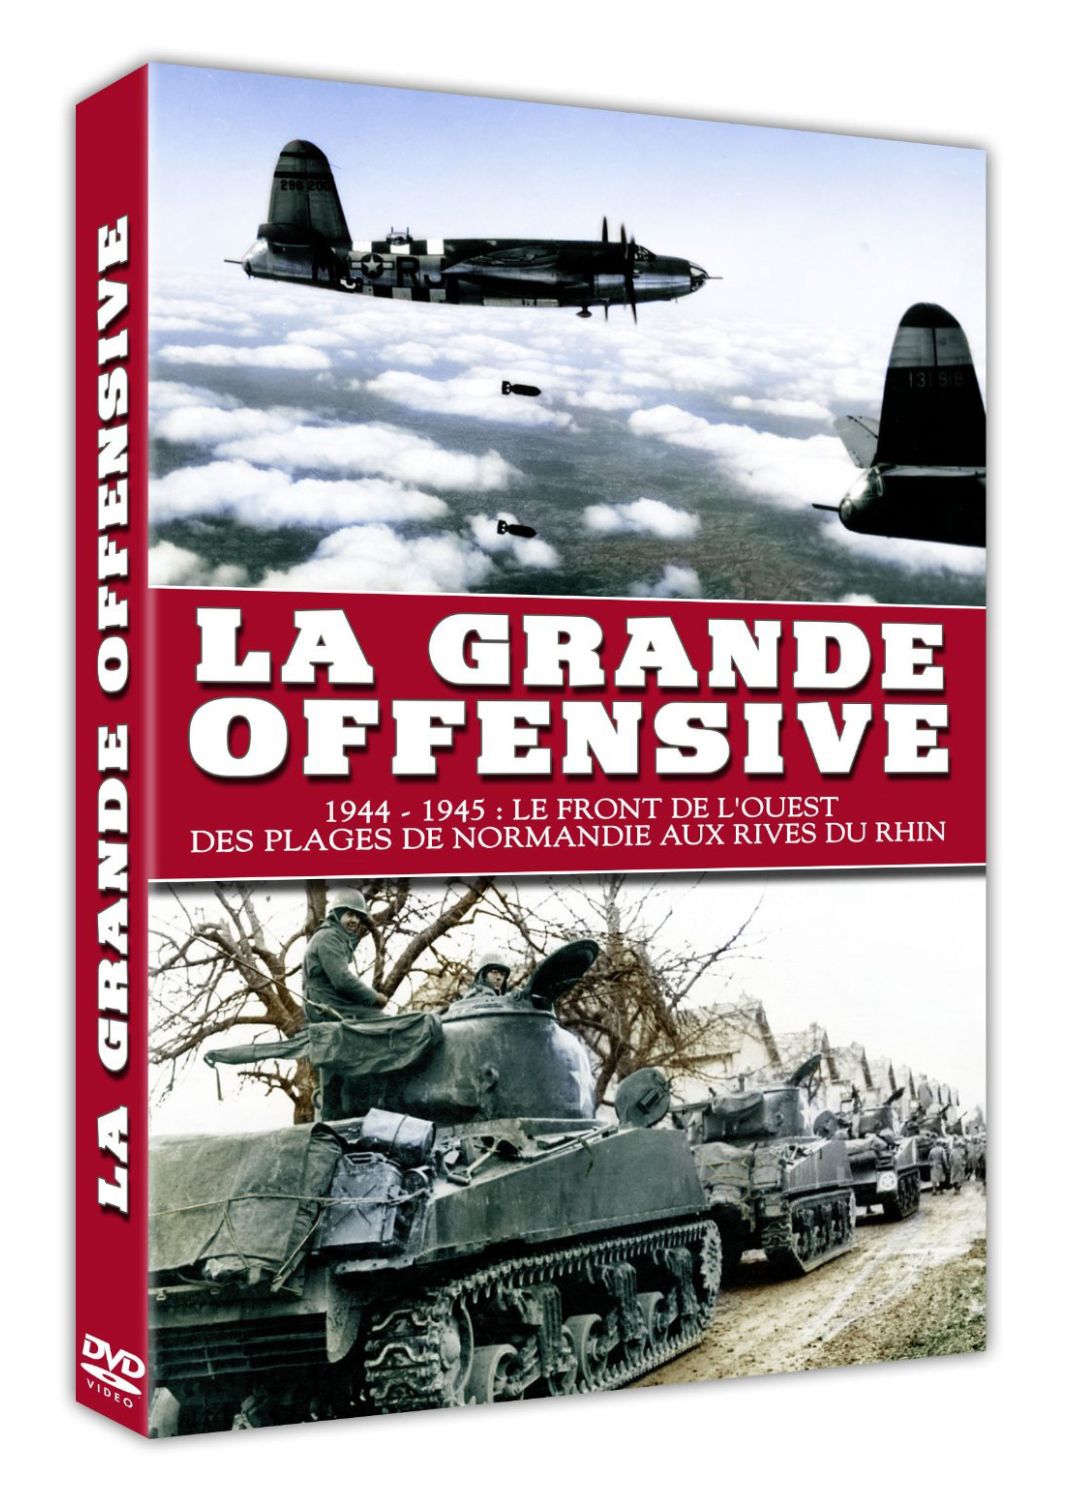 La Grande Offensive [DVD]